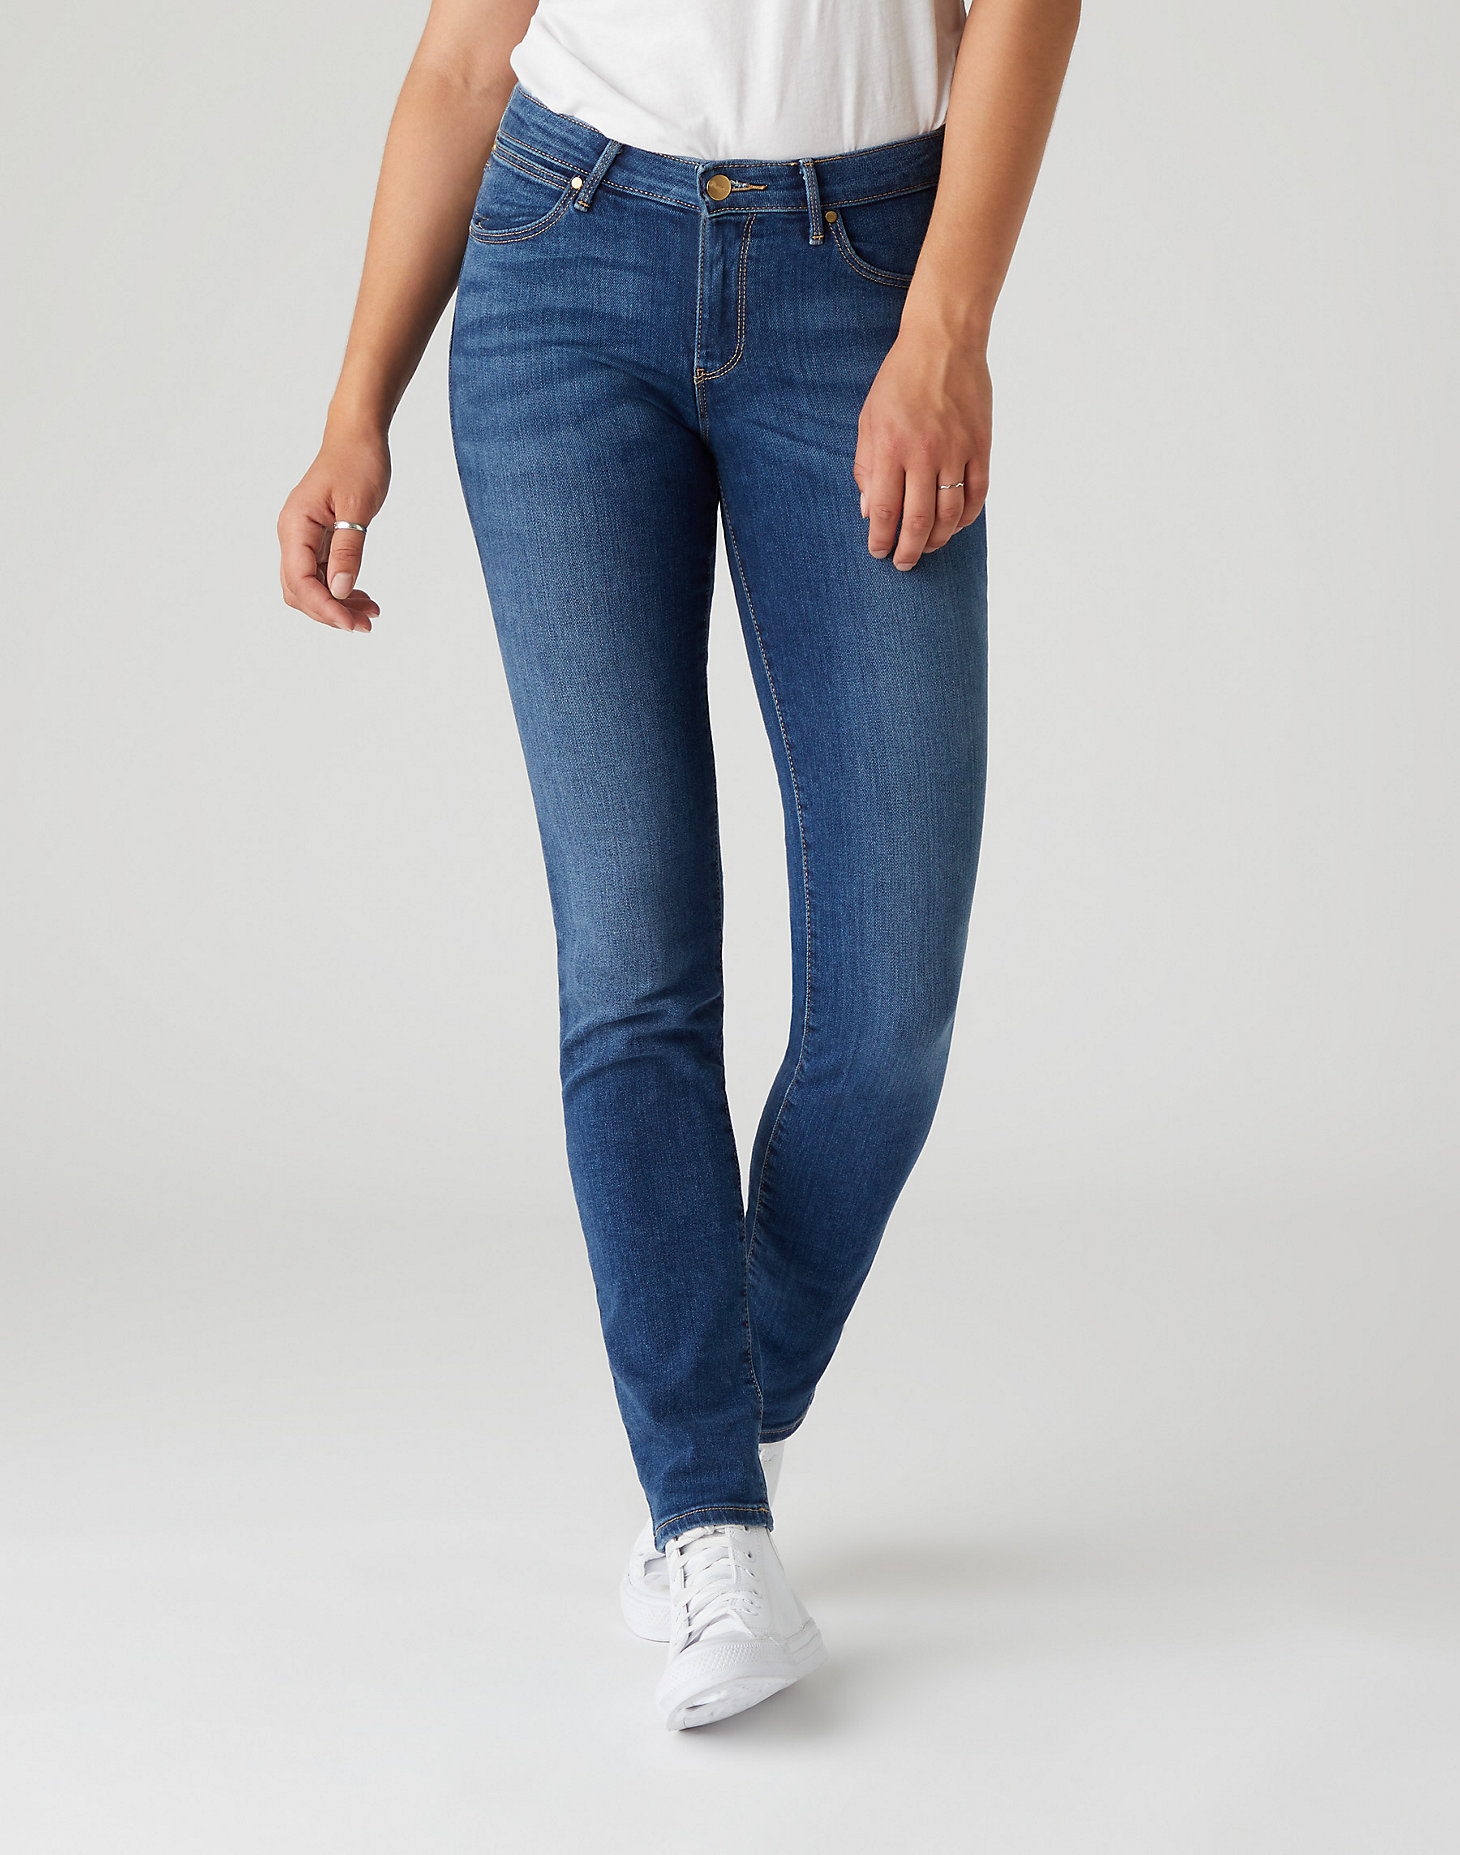 Slim Jeans - Women